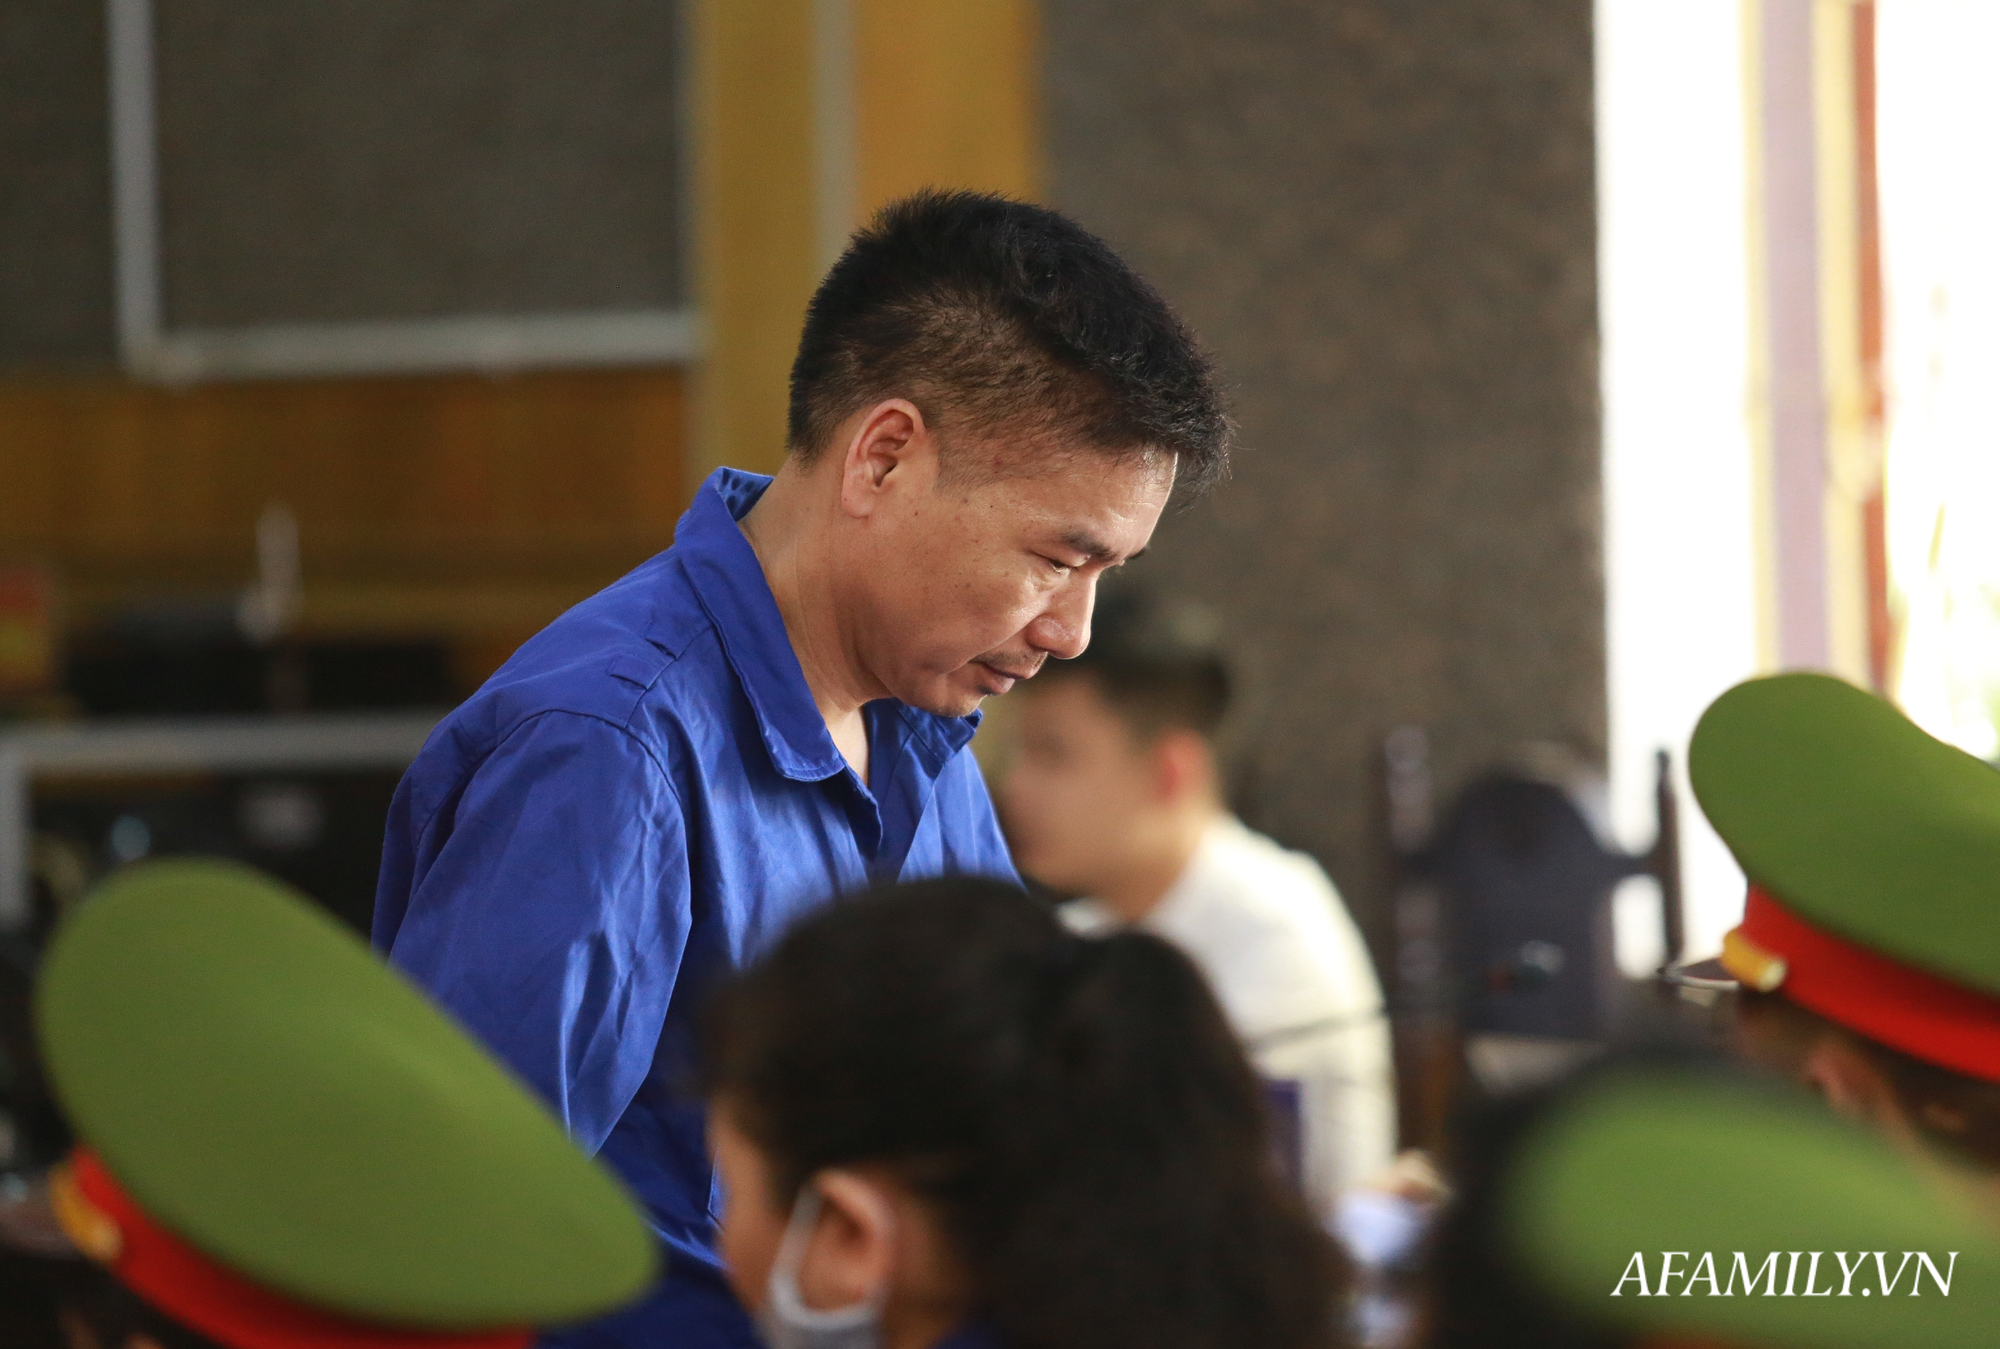 Trưởng phòng Khảo thí Sở GD&ĐT Sơn La bị đề nghị mức án 25 năm tù về tội nâng điểm và nhận hối lộ hơn 1 tỷ đồng - Ảnh 3.